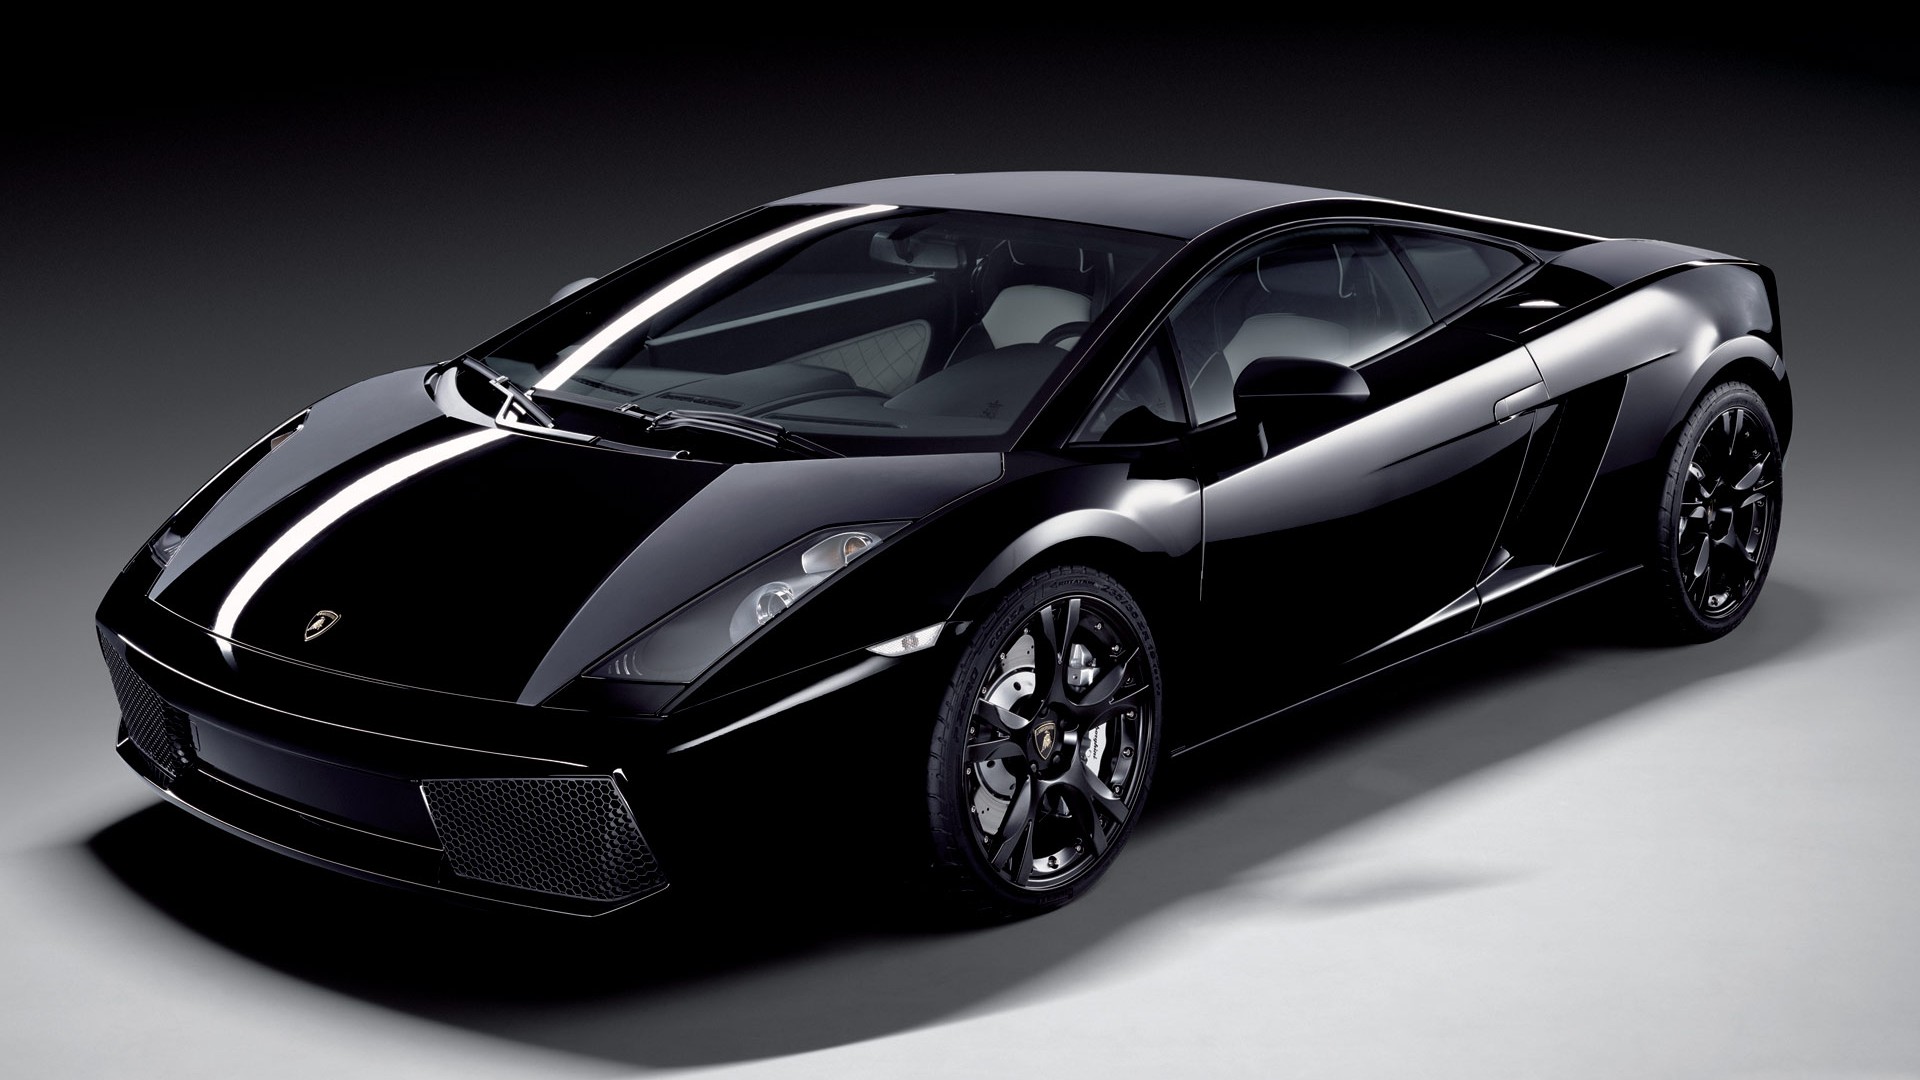 Lamborghini Gallardo Black HD Image Cars